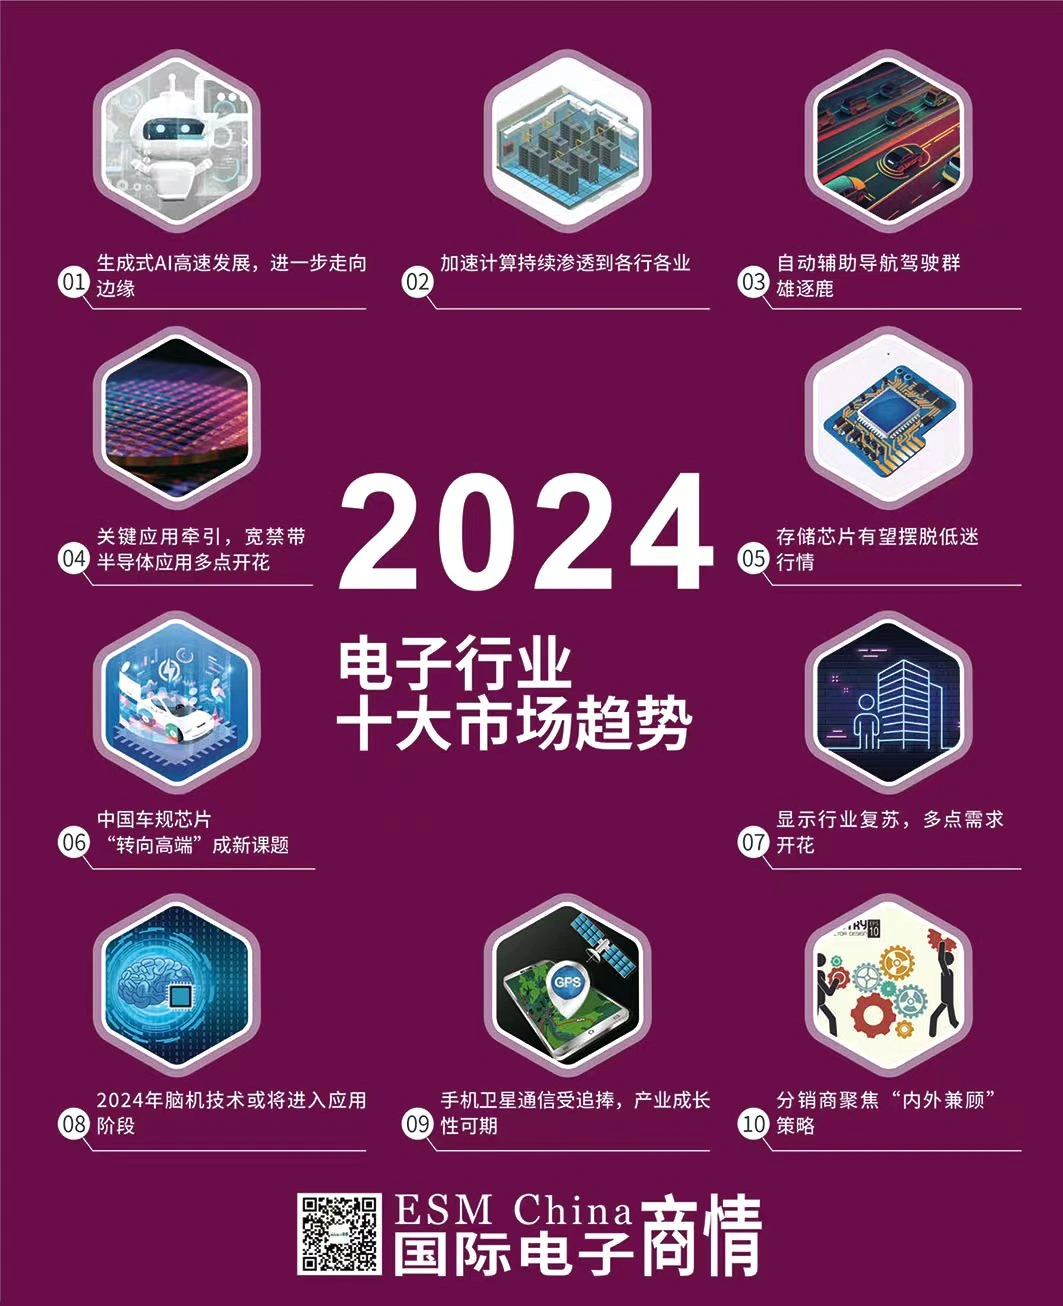 Los 10 principales mercados y tendencias de aplicaciones en la industria electrónica en 2024